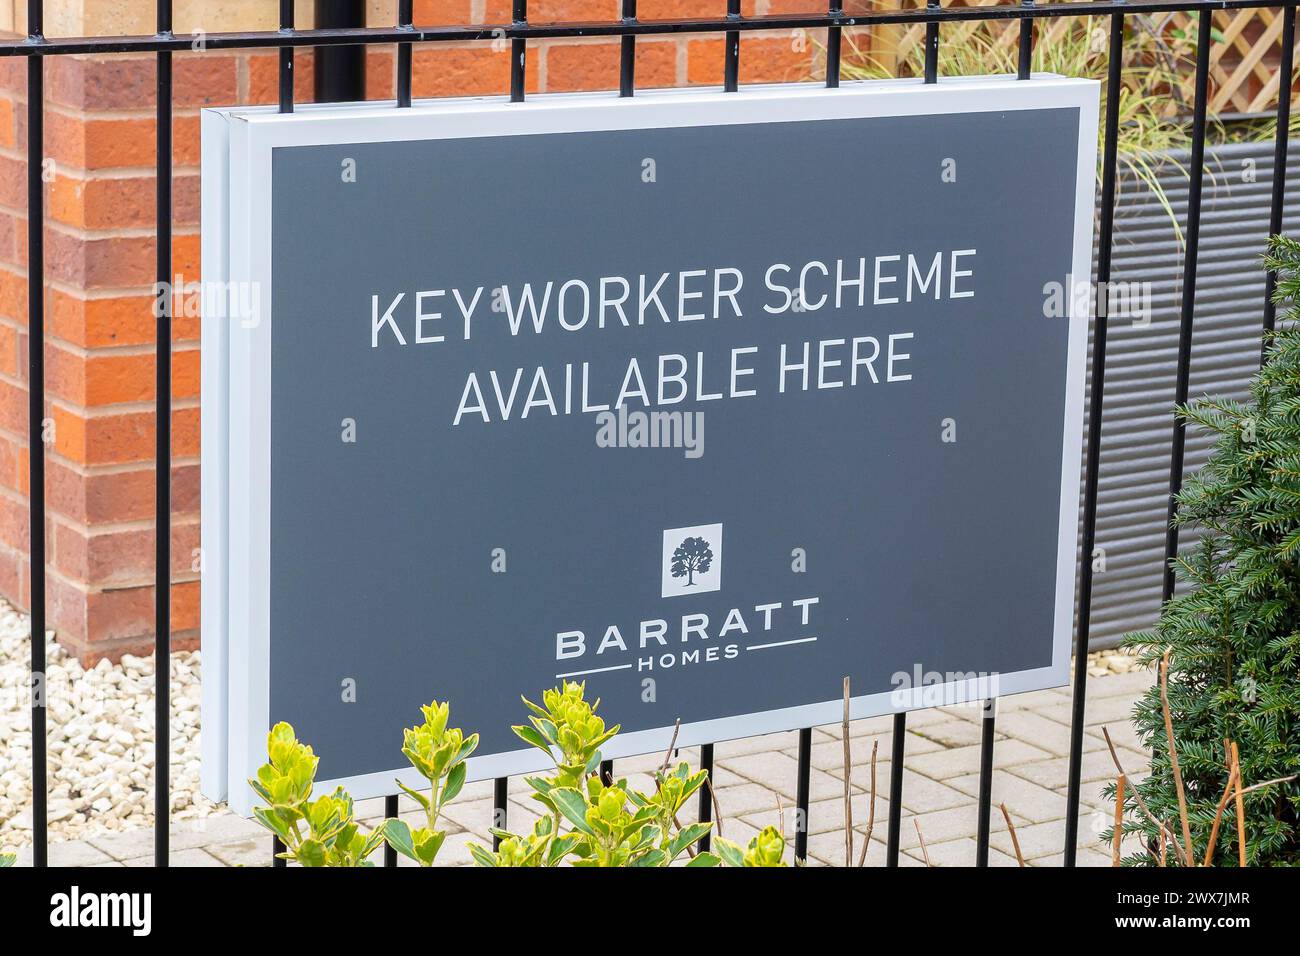 Primo piano di un cartello Barratt Homes che pubblicizza il programma Key Worker disponibile per gli acquirenti di immobili su un nuovo edificio di sviluppo immobiliare, Regno Unito. Foto Stock